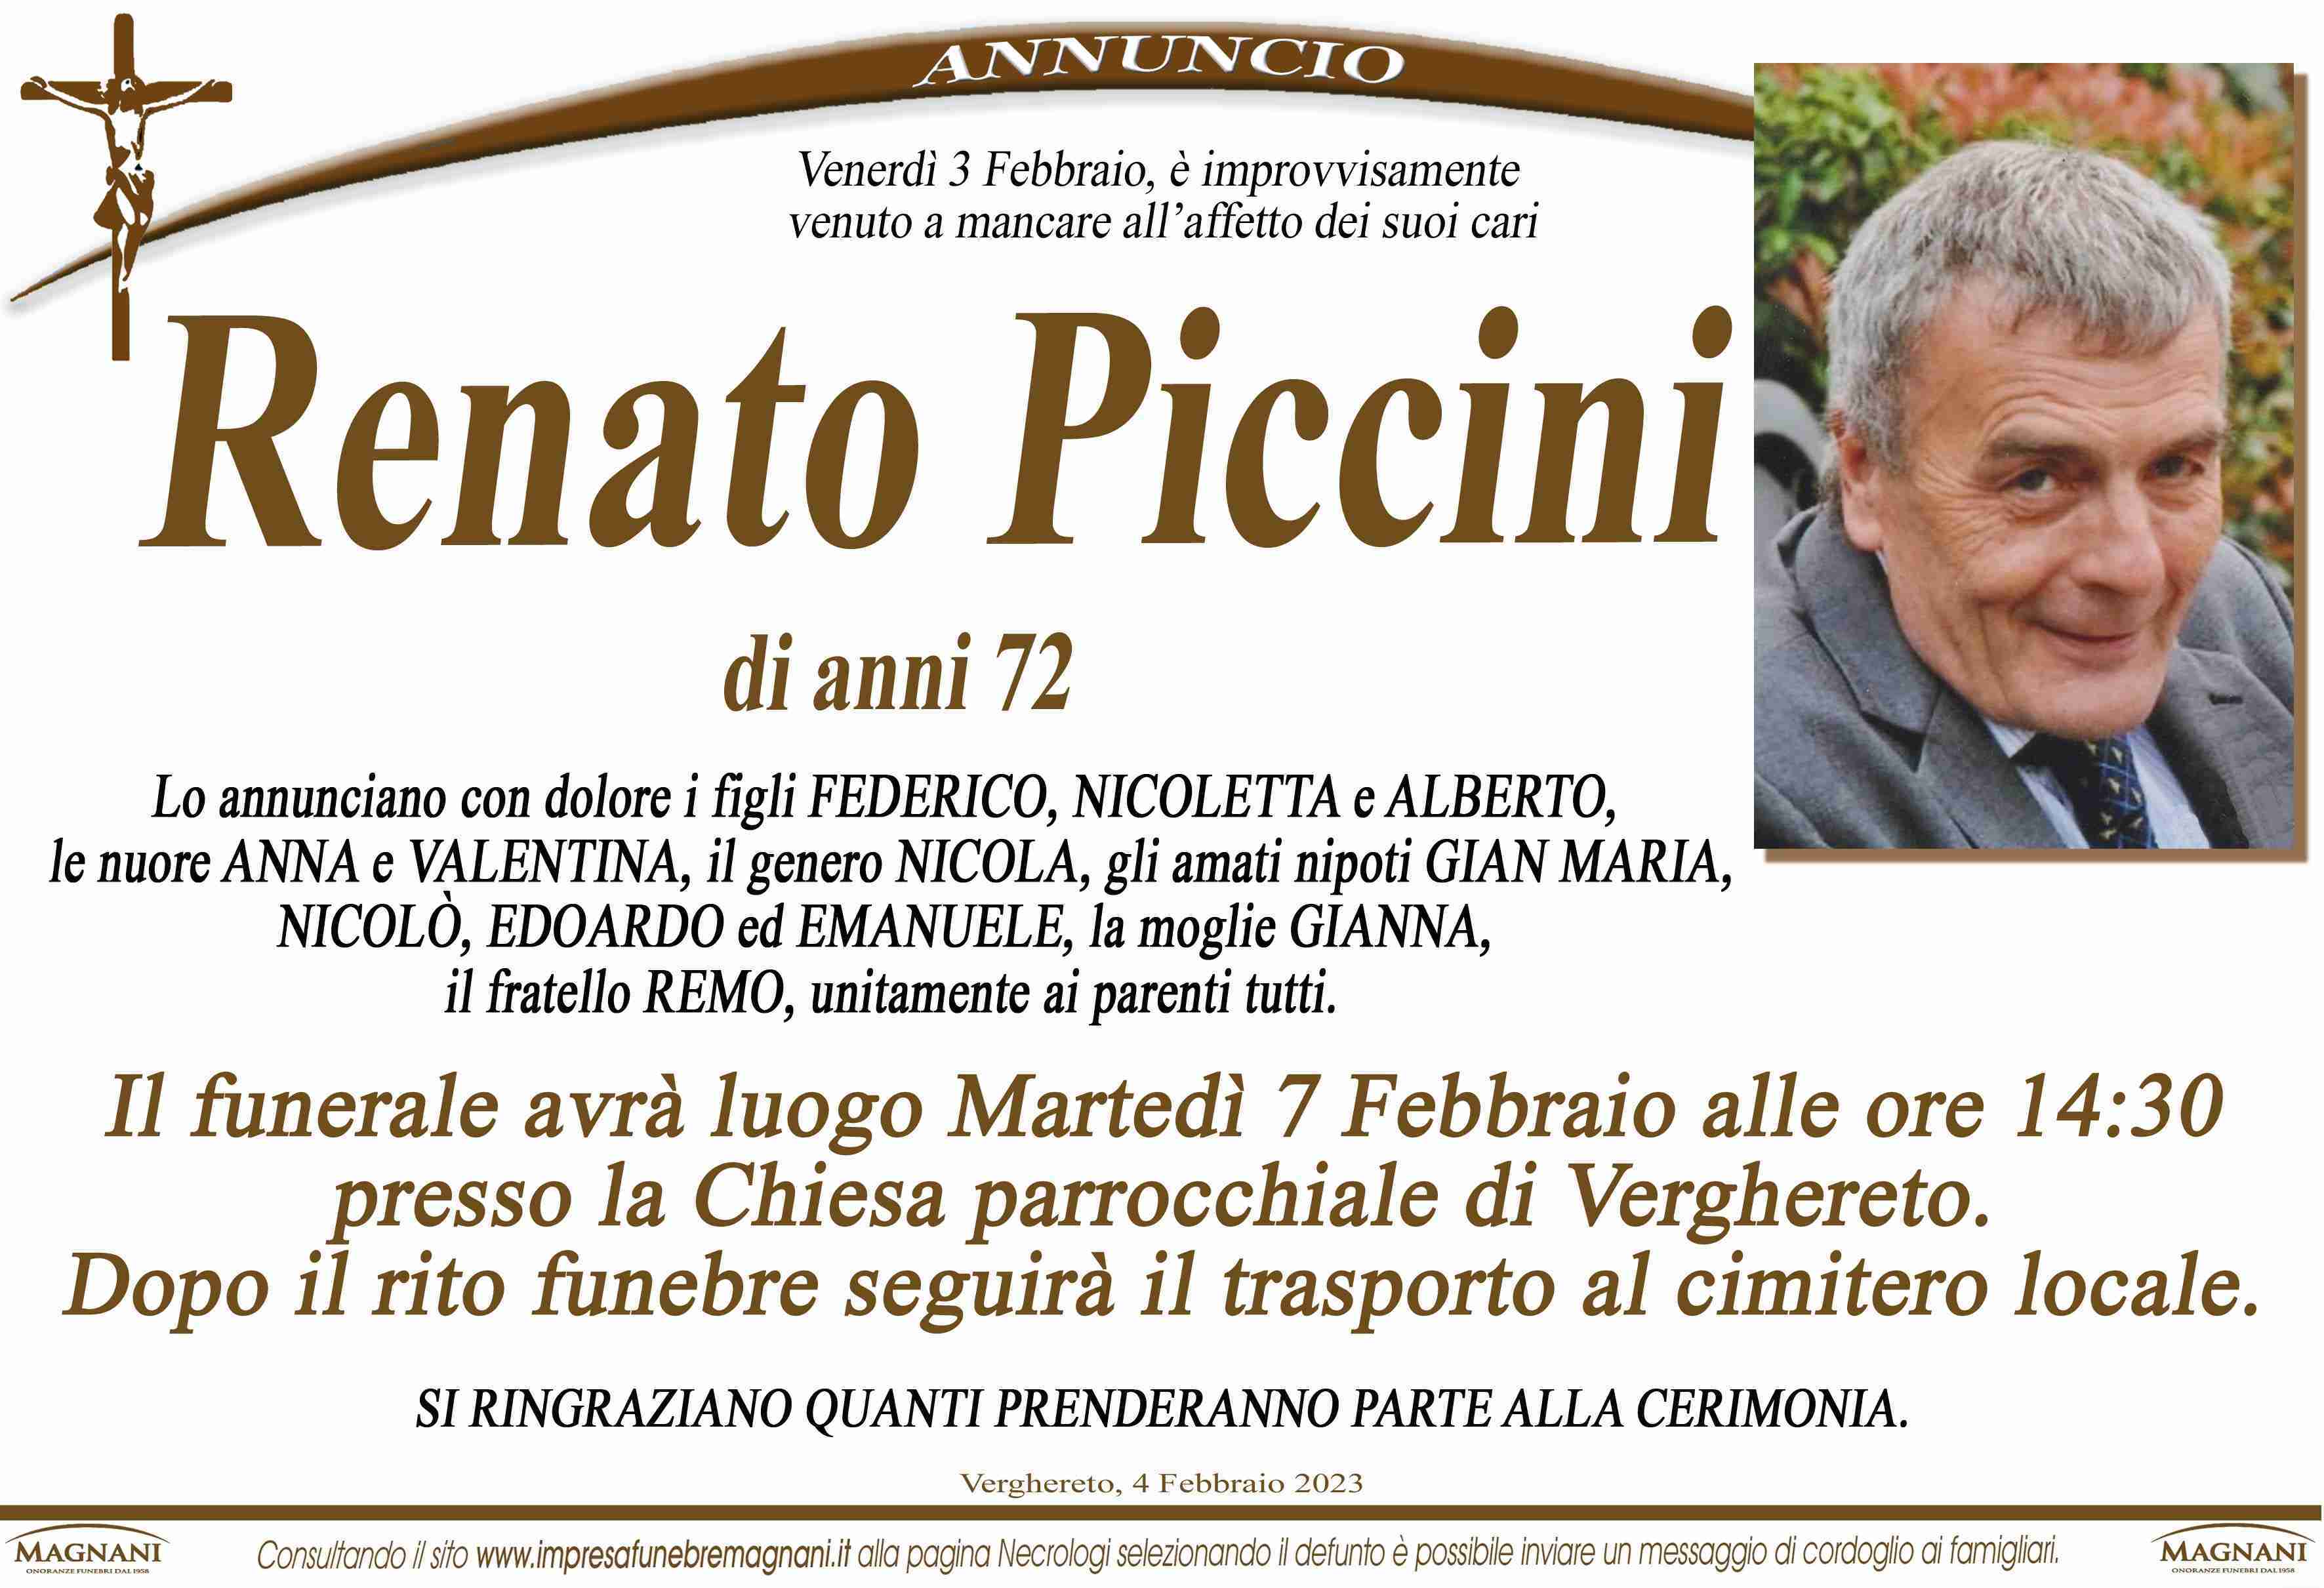 Renato Piccini